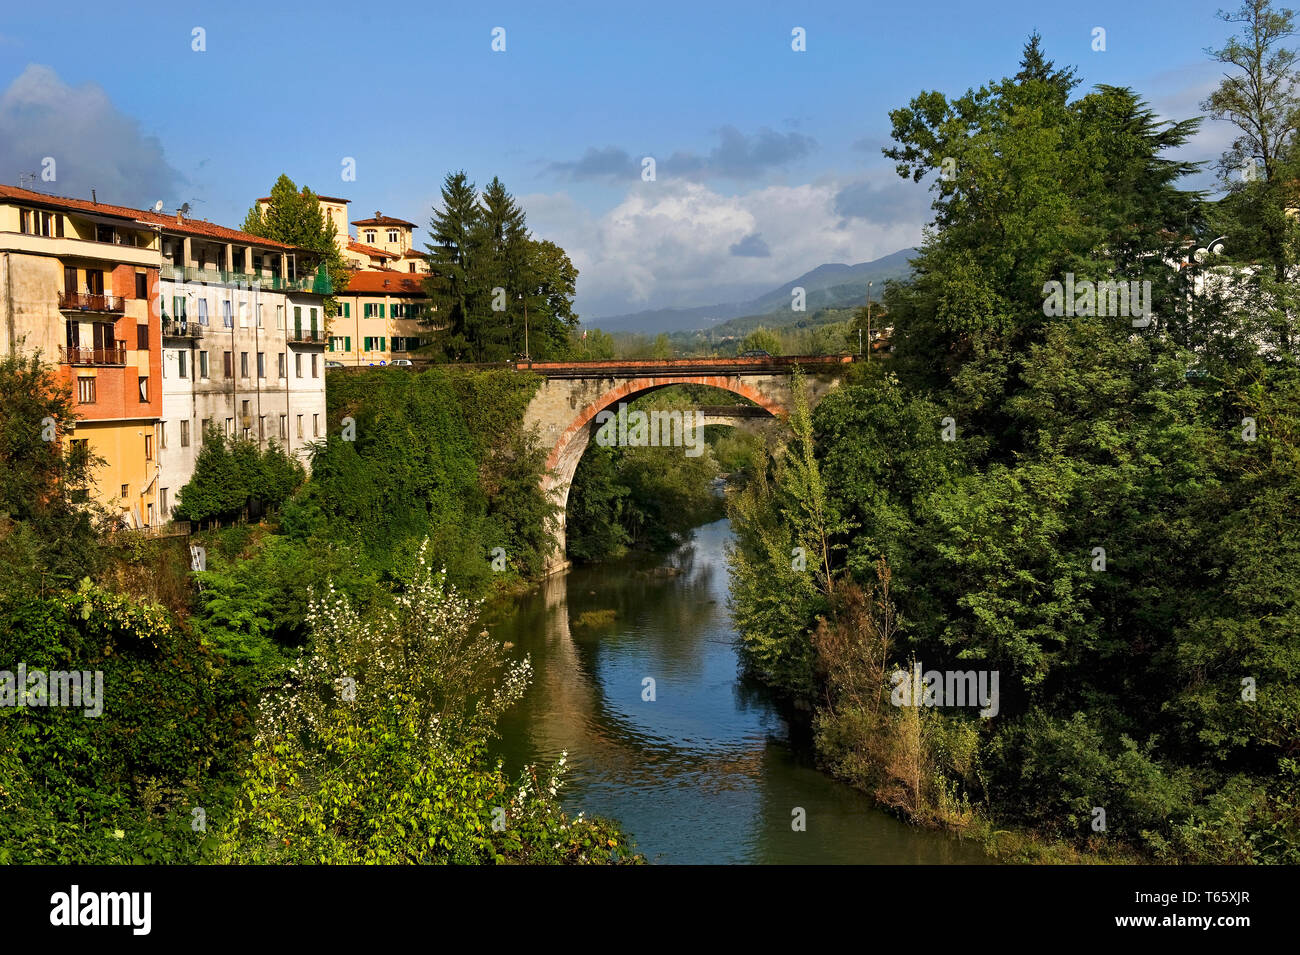 Castelnuovo di Garfagnana, una cittadina in provincia di Lucca, Toscana, Italia centrale. Foto Stock